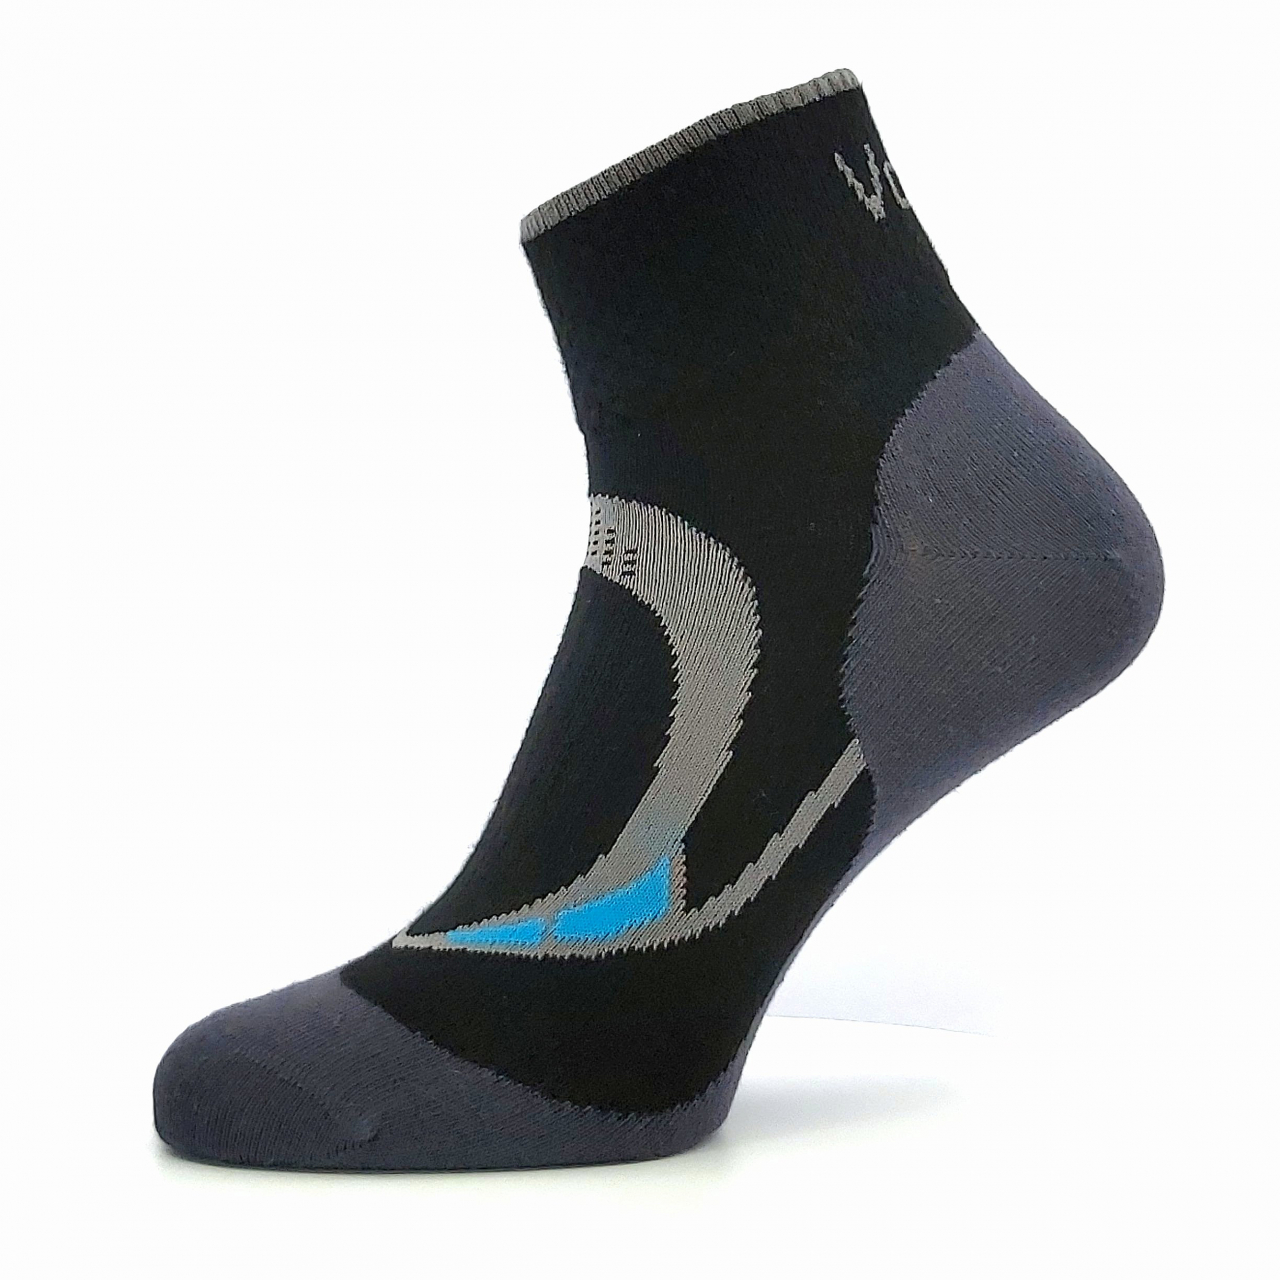 Ponožky dámské sportovní Voxx Lira - černé, 39-42